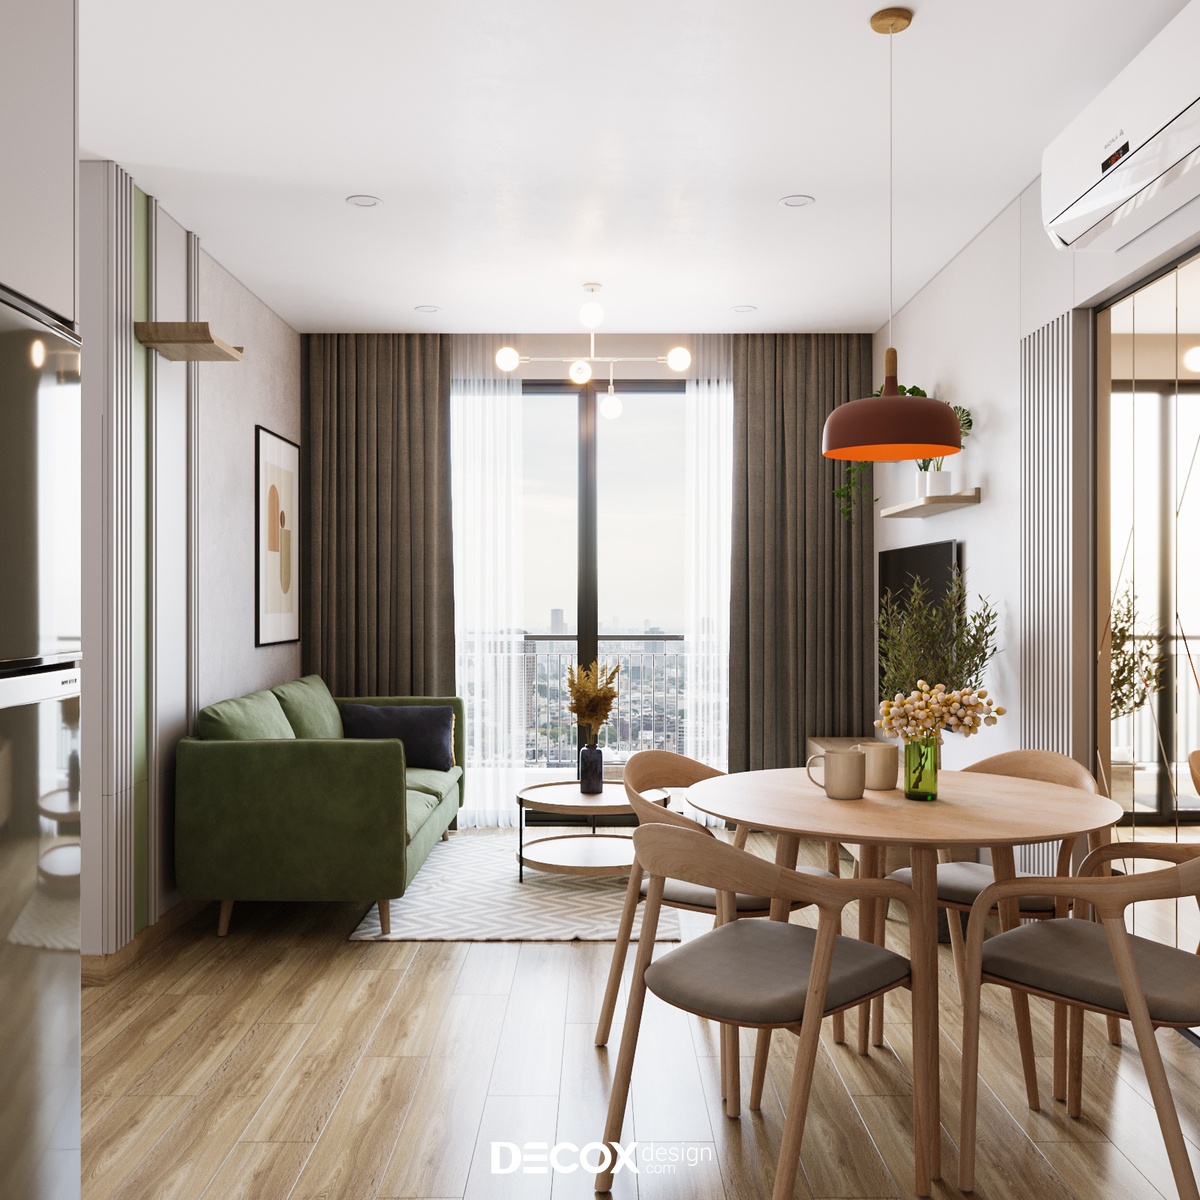 Phong cách hiện đại được ứng dụng trong thiết kế nội thất chung cư